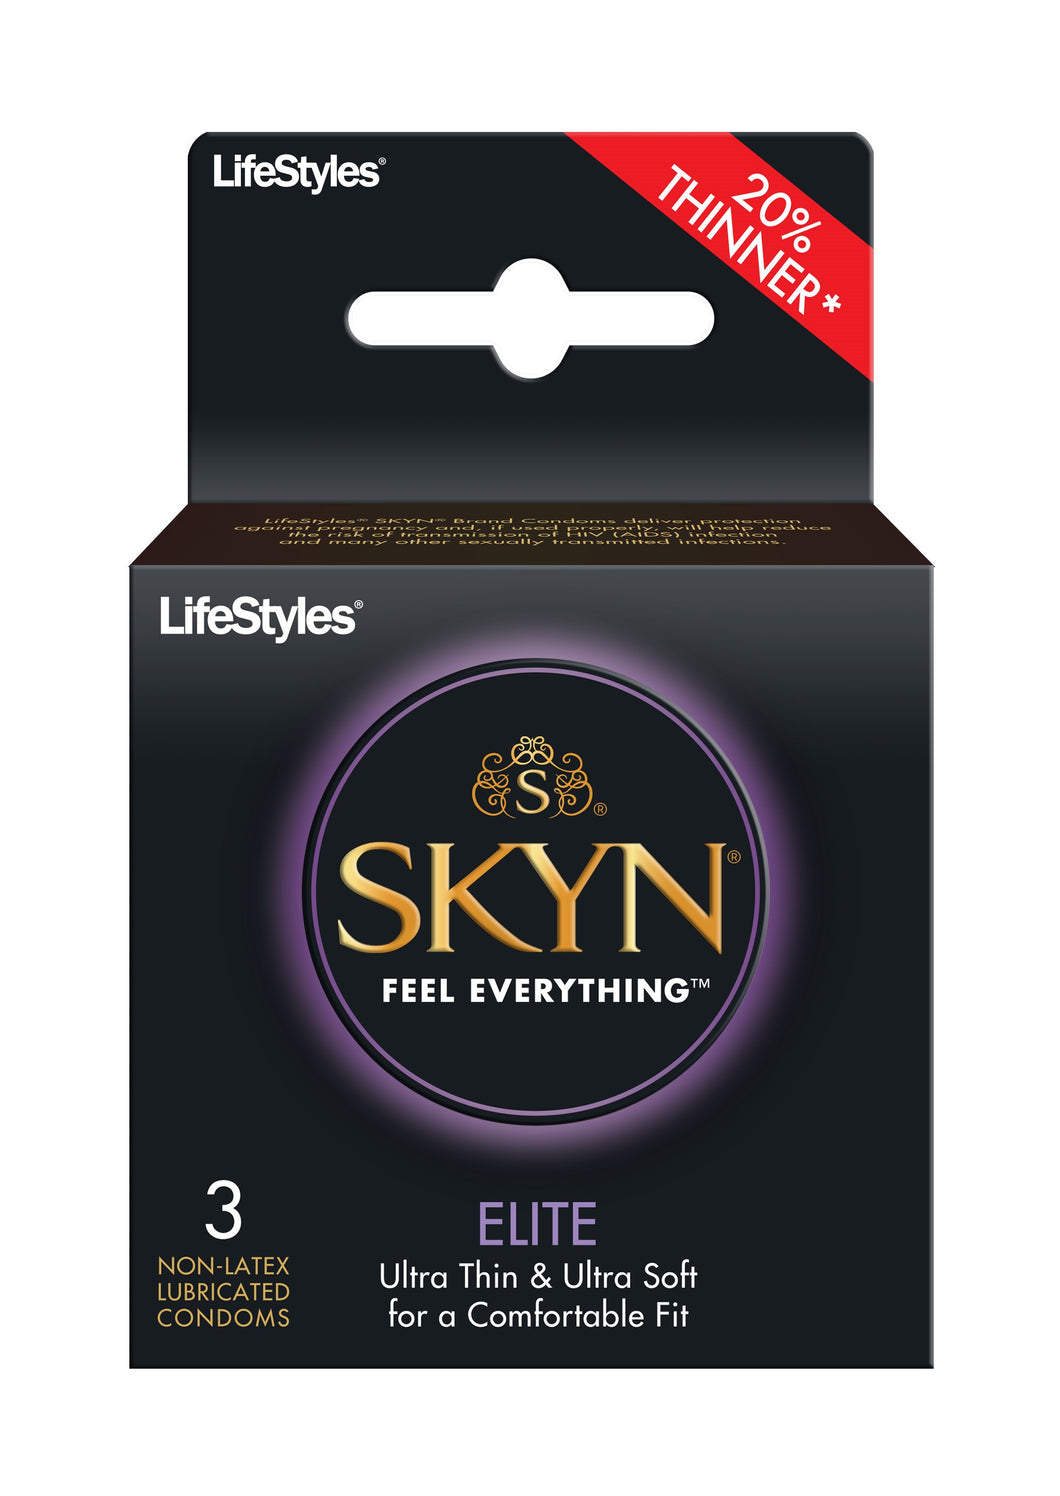 Lifestyles Skyn Elite - 3 Pack